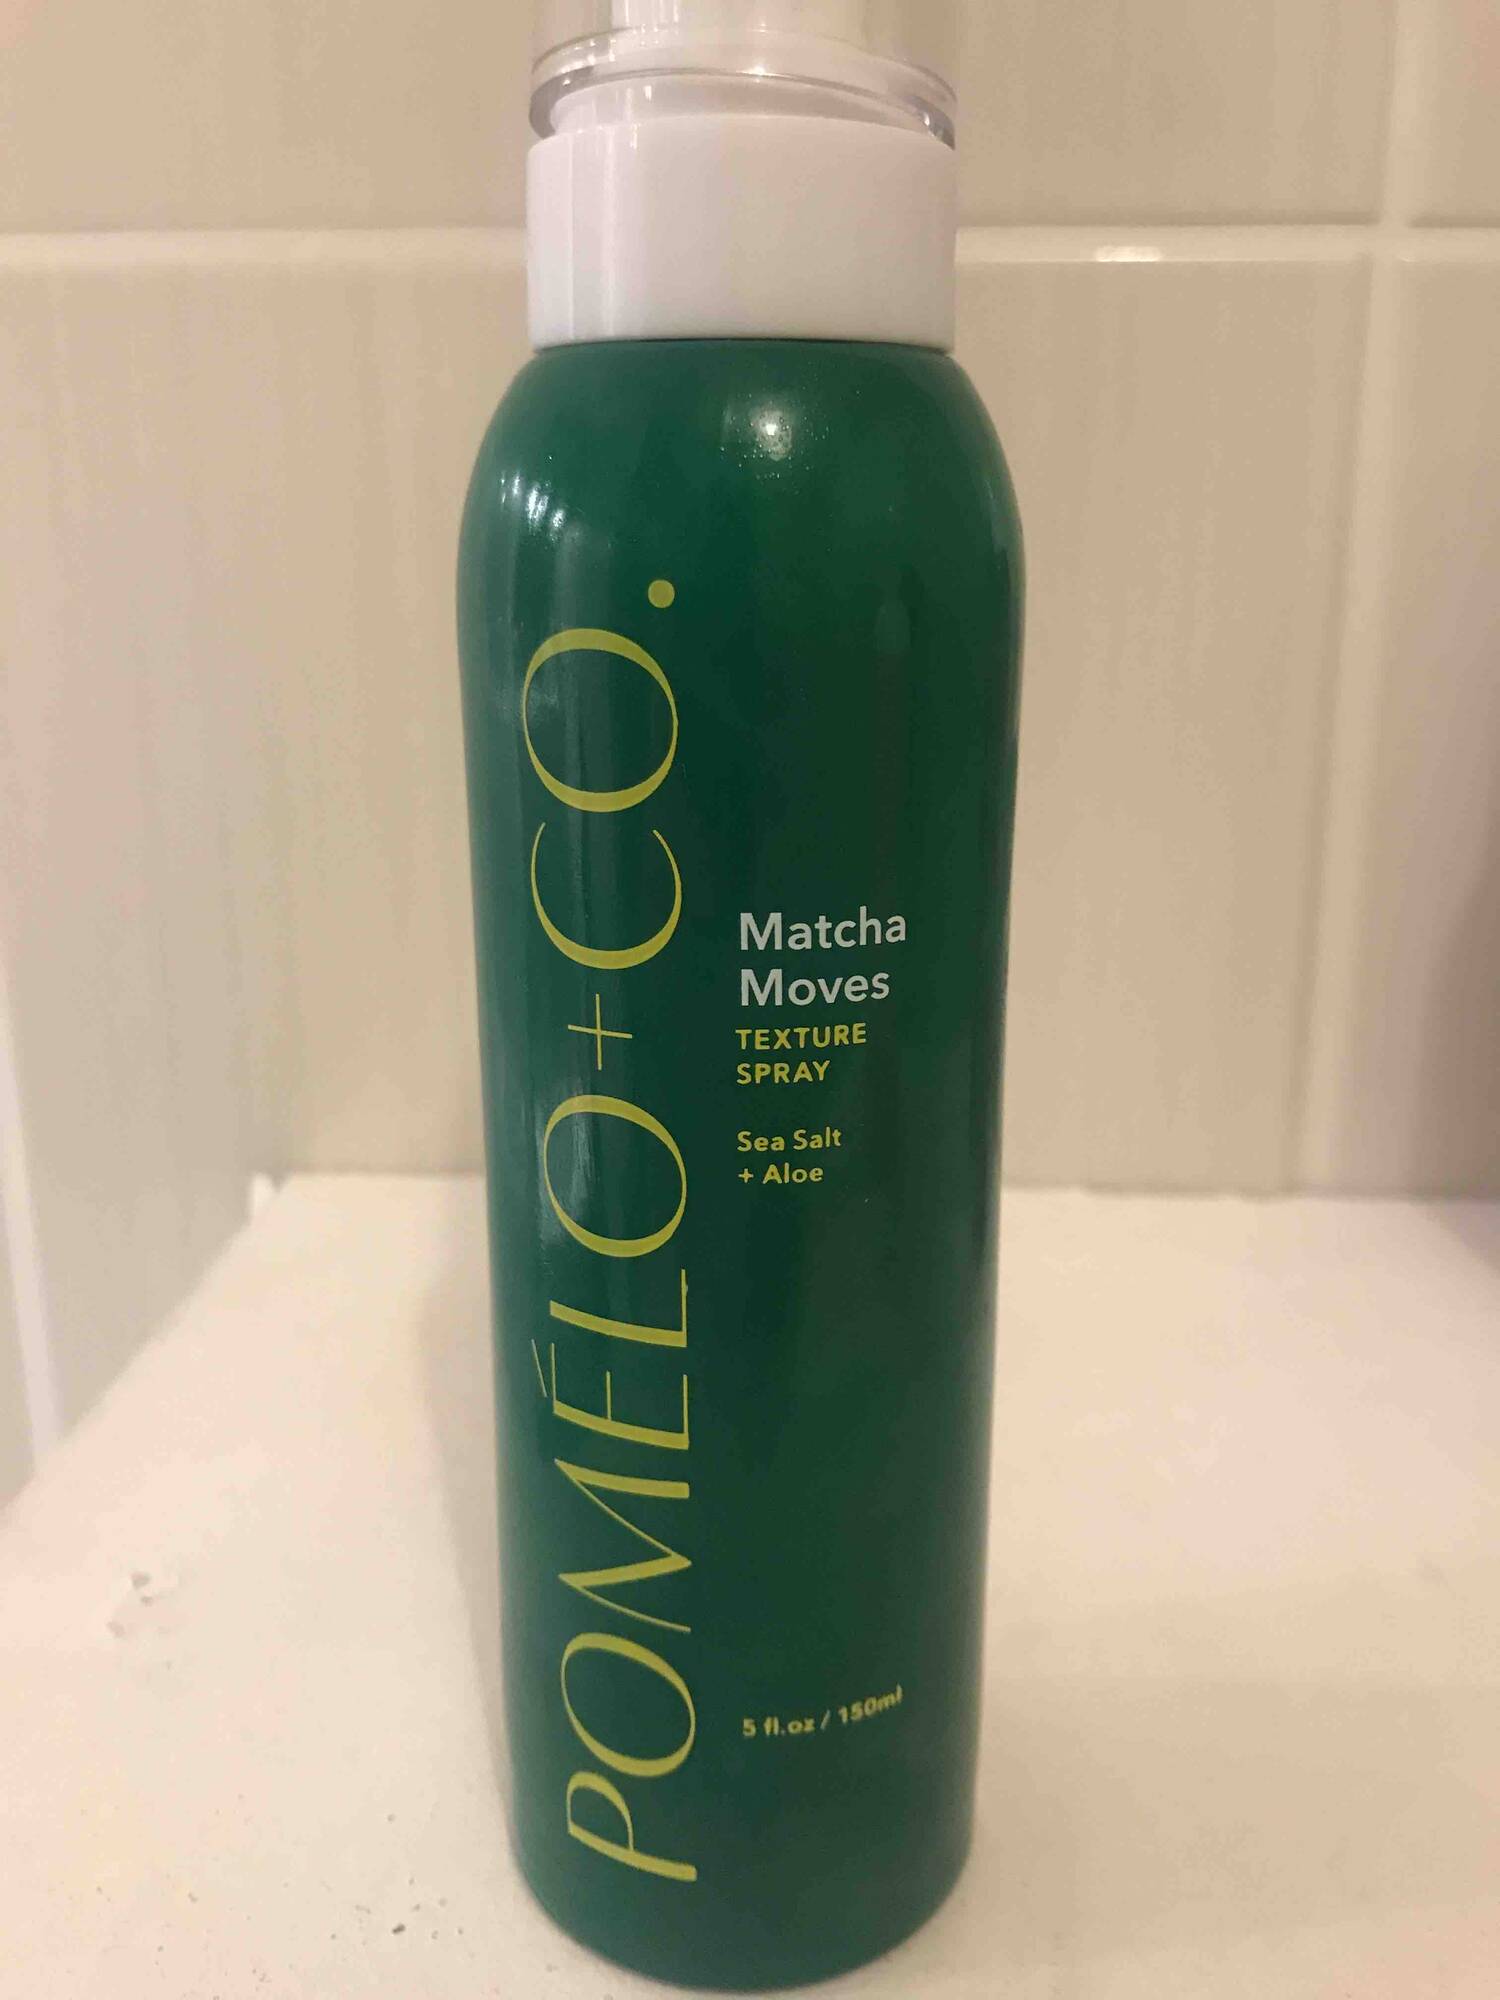 POMELO-CO - Matcha moves - Texture spray